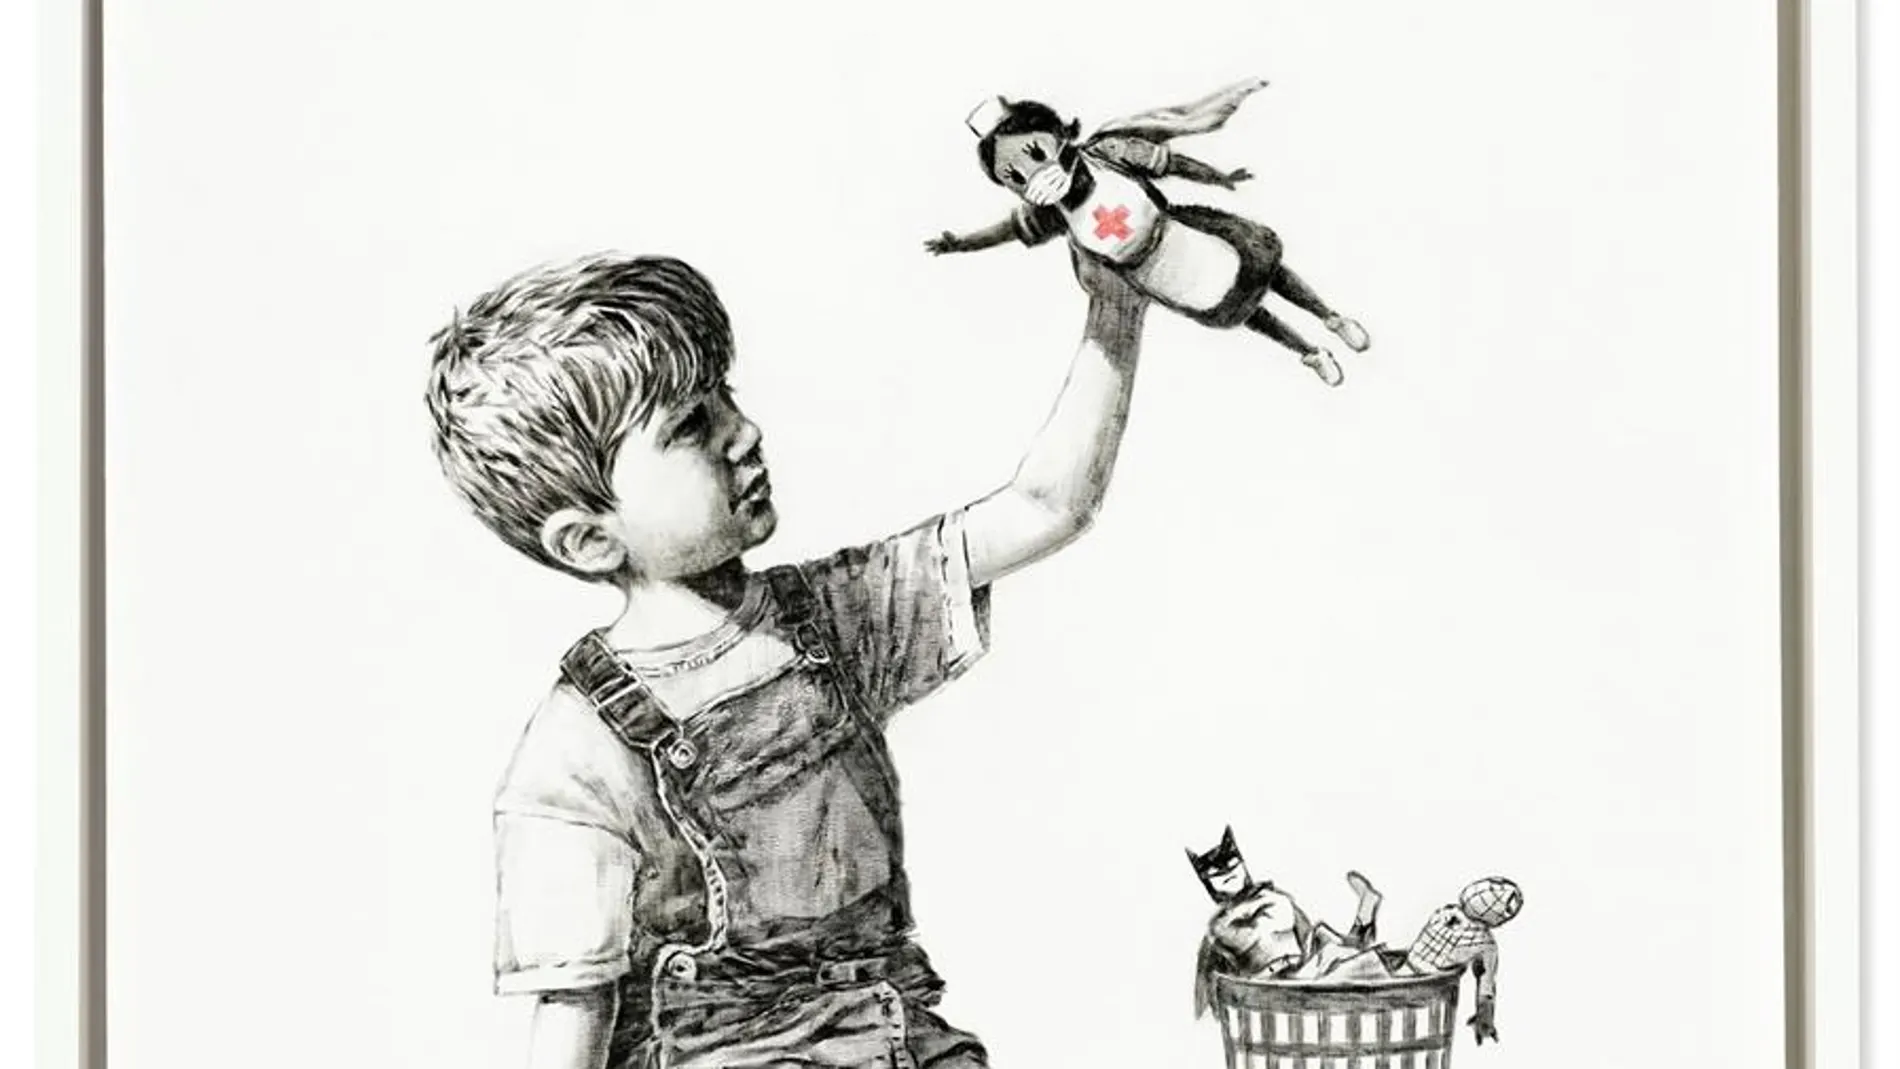 La obra 'Game Changer', de Banksy